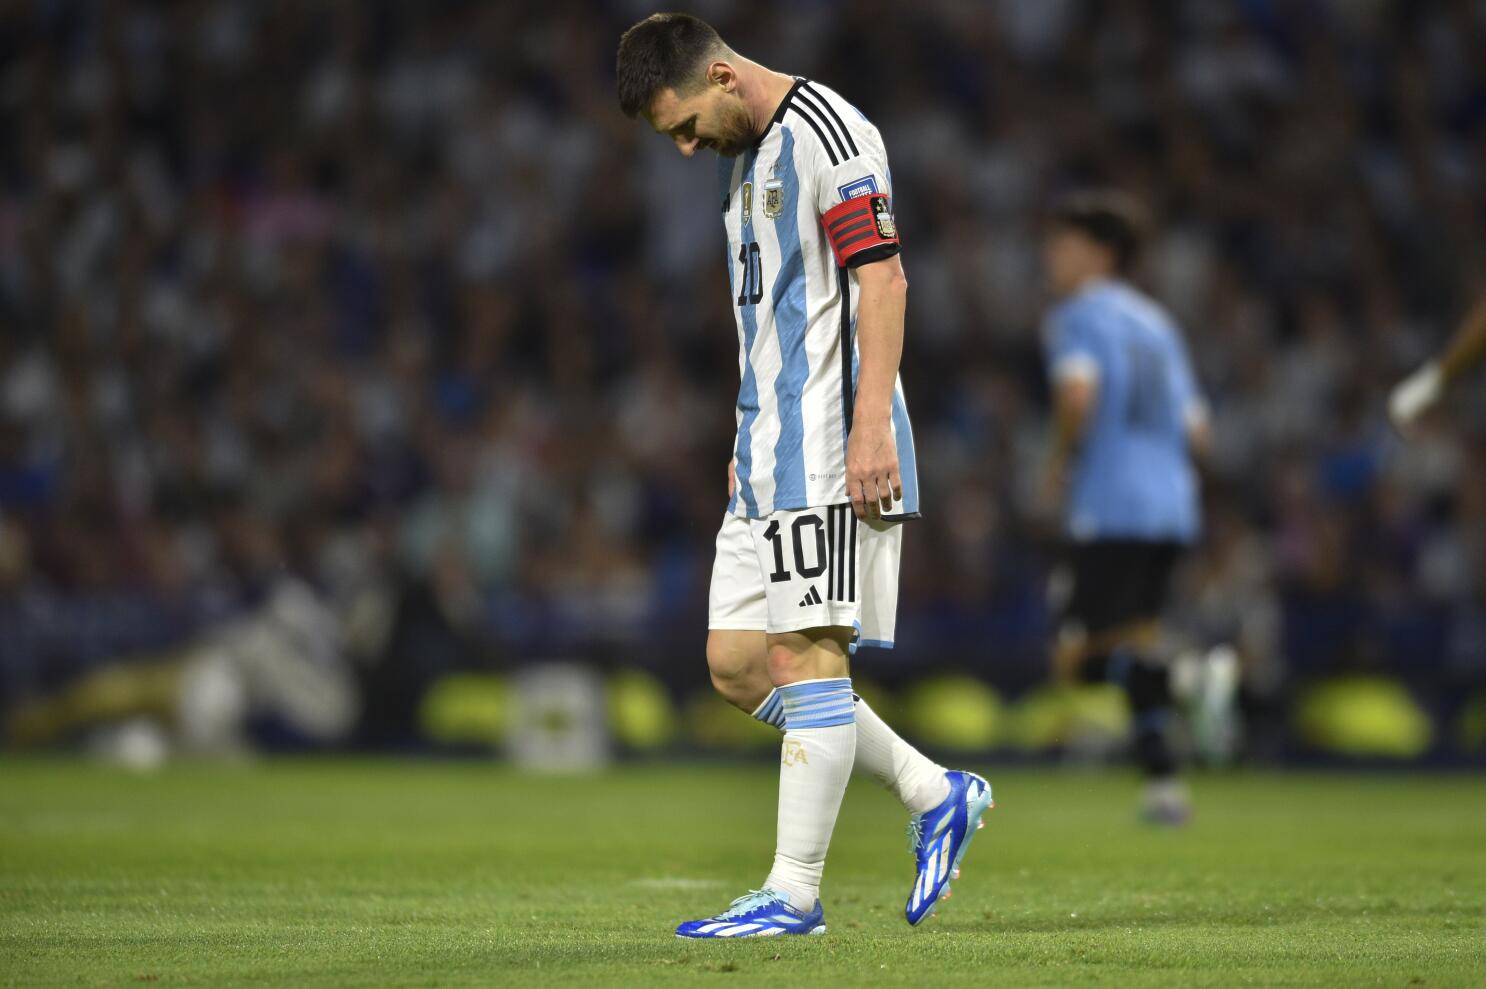 Final de campeonato uruguayo con Liverpool por hacer historia - Prensa  Latina